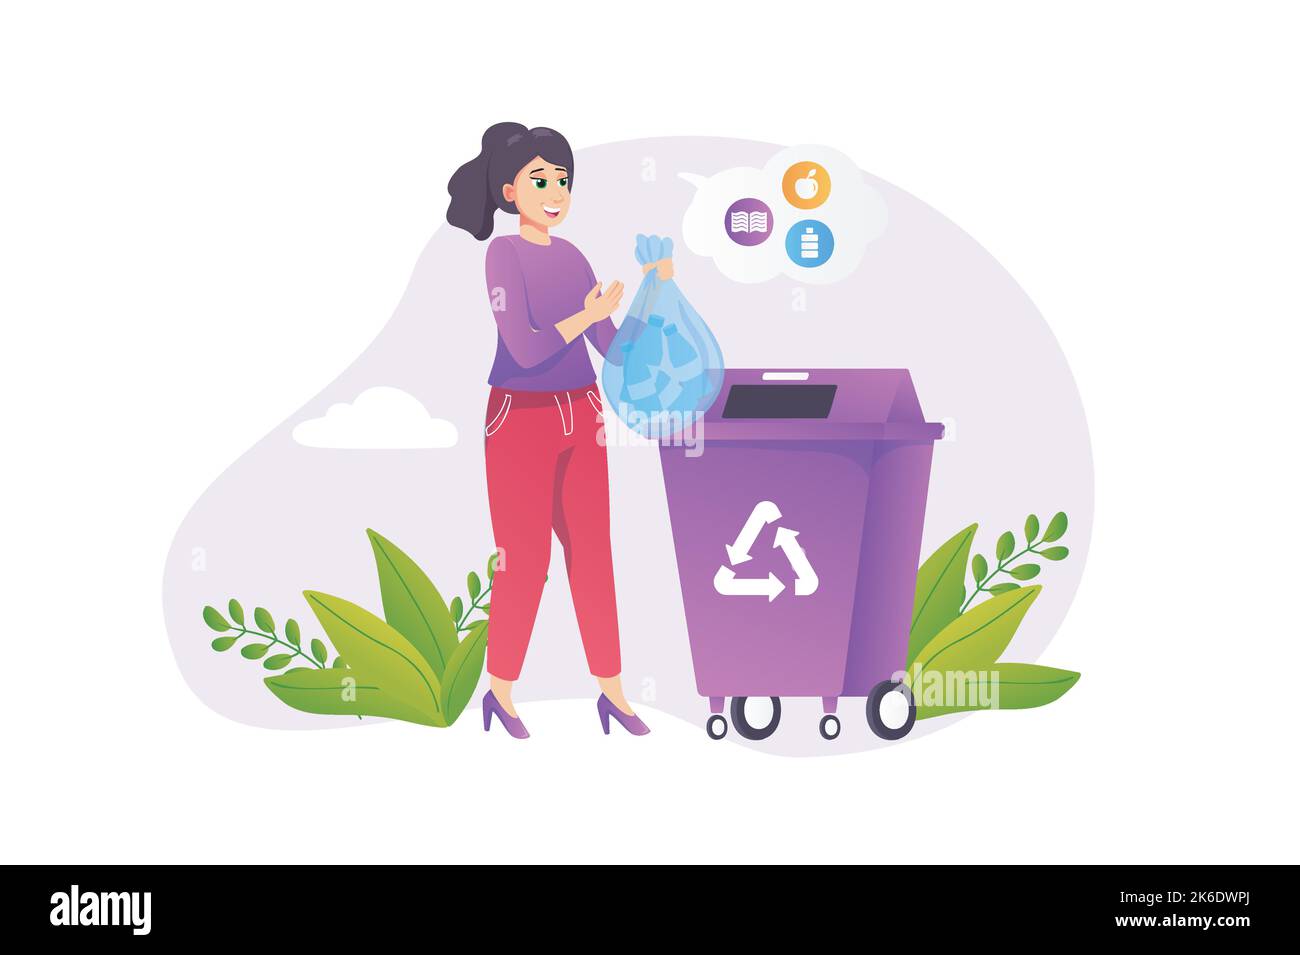 Concepto de reciclaje de basura en estilo plano con la escena de la gente. Mujer feliz recogiendo y separando la basura y la tira en el recipiente que reutiliza. Eco Ilustración del Vector